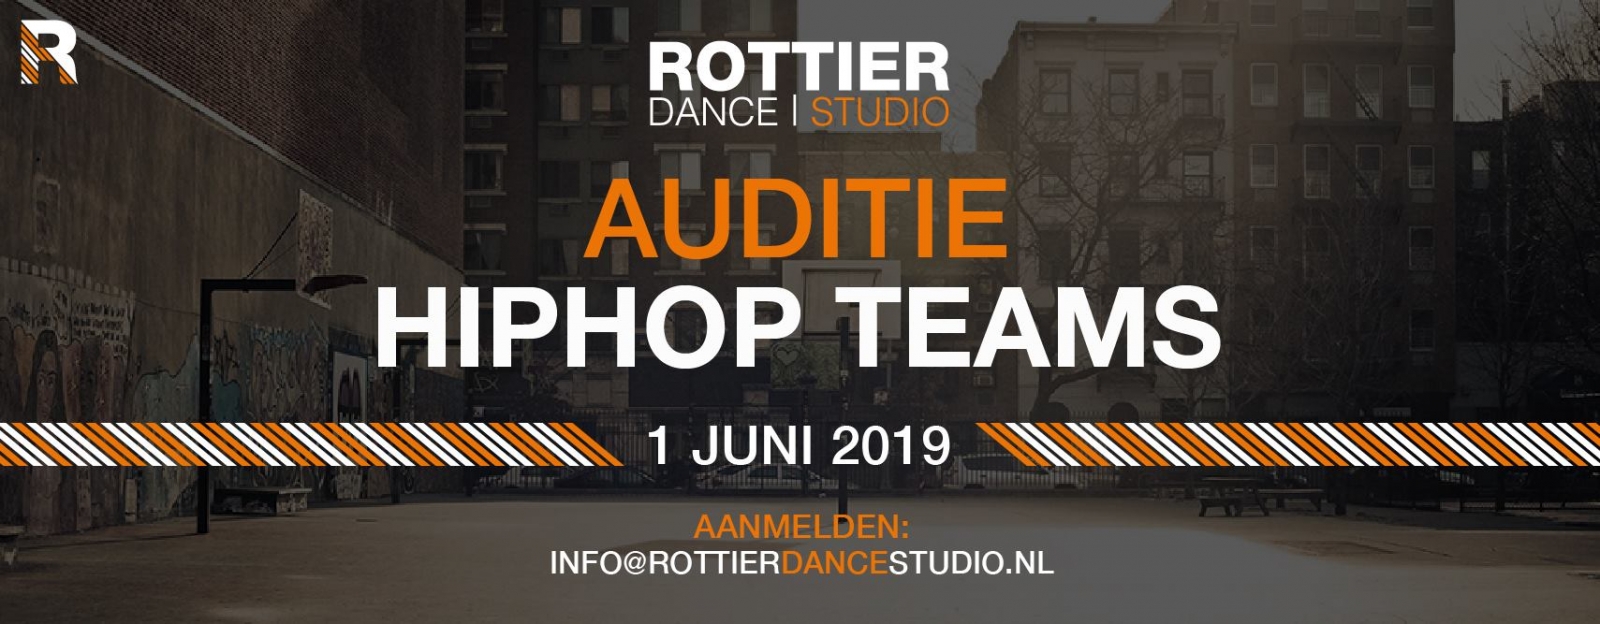 Auditie HipHop Teams Rottier Dance Studio 2019 poster